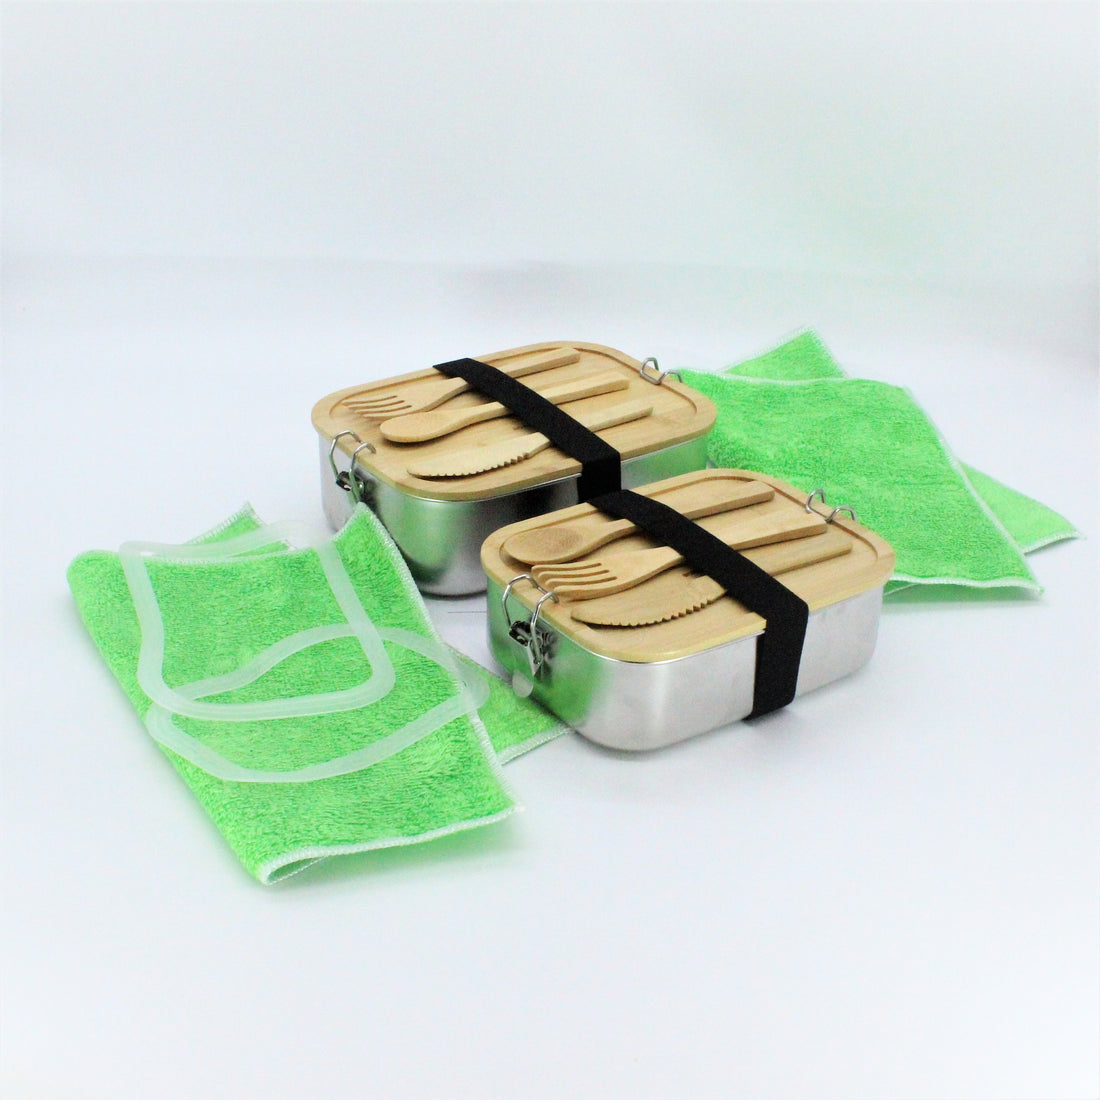 2x Premium Edelstahl Lunchbox 1500 ml, inkl. Bambus-Besteck, Ersatzdichtung, ÖKO-Baumwoll-Zugbeutel, Gummiband, auslaufsicher – geruchs- und geschmacksneutral